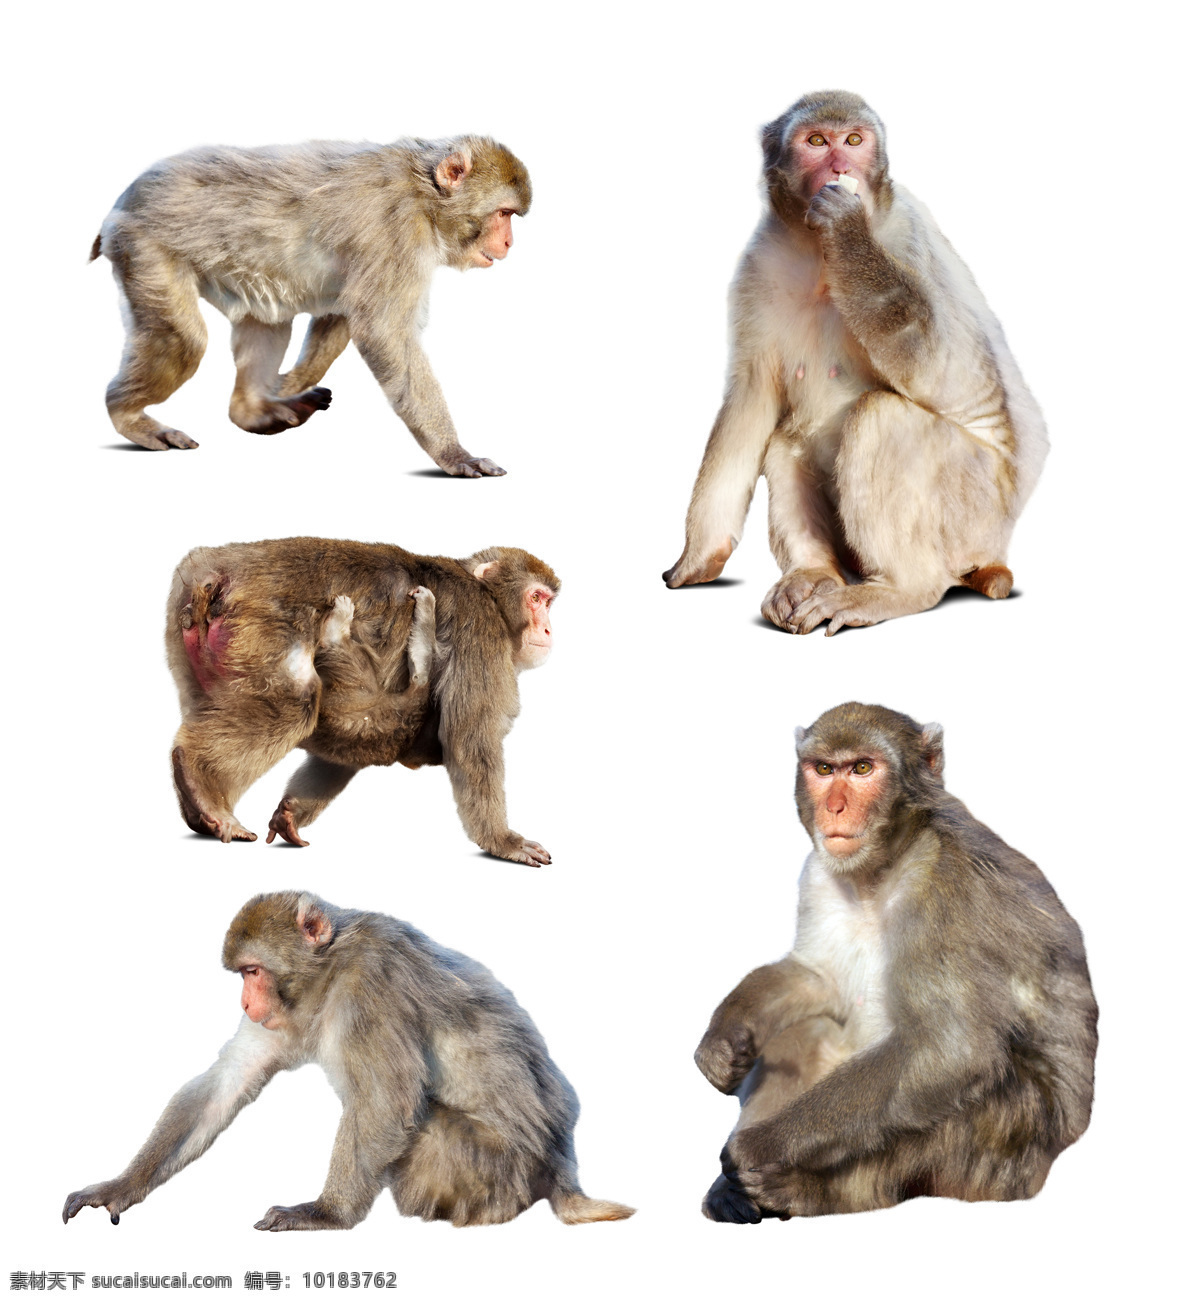 猴子摄影 猴子 动物摄影 动物世界 野生动物 陆地动物 生物世界 白色